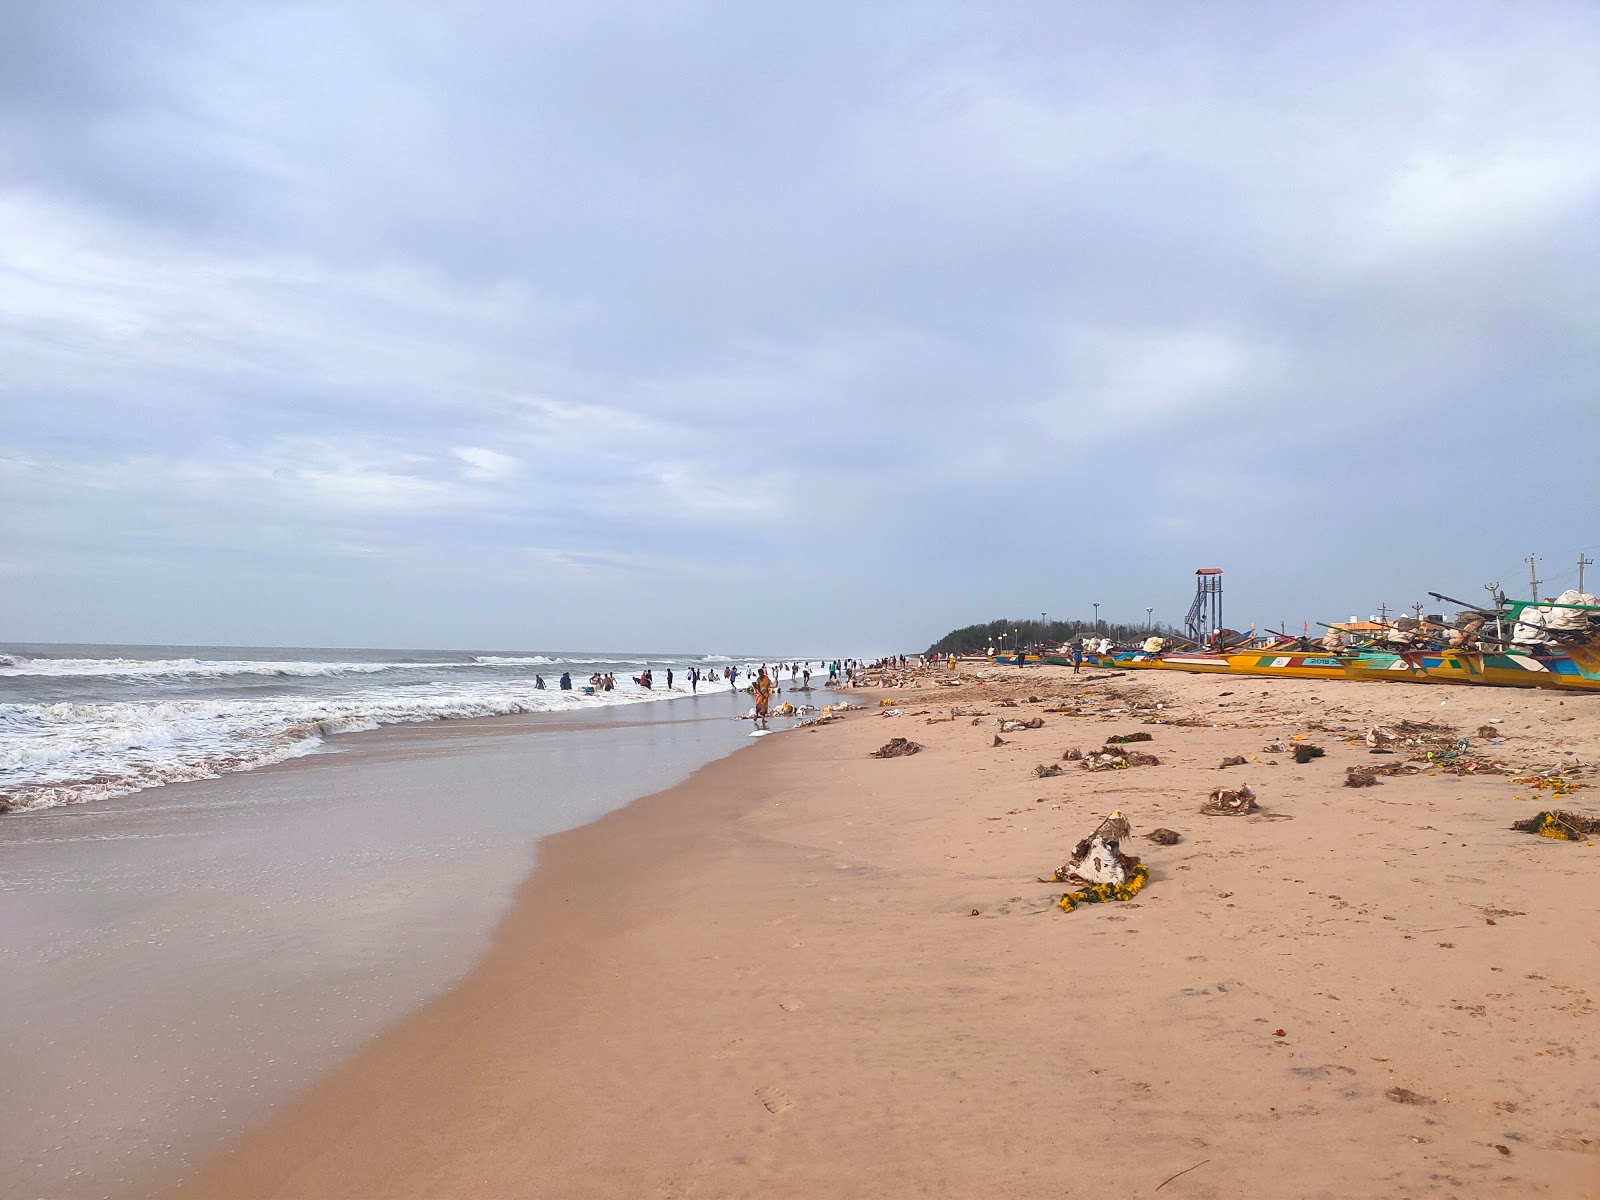 Kothapatnam Beach'in fotoğrafı parlak kum yüzey ile